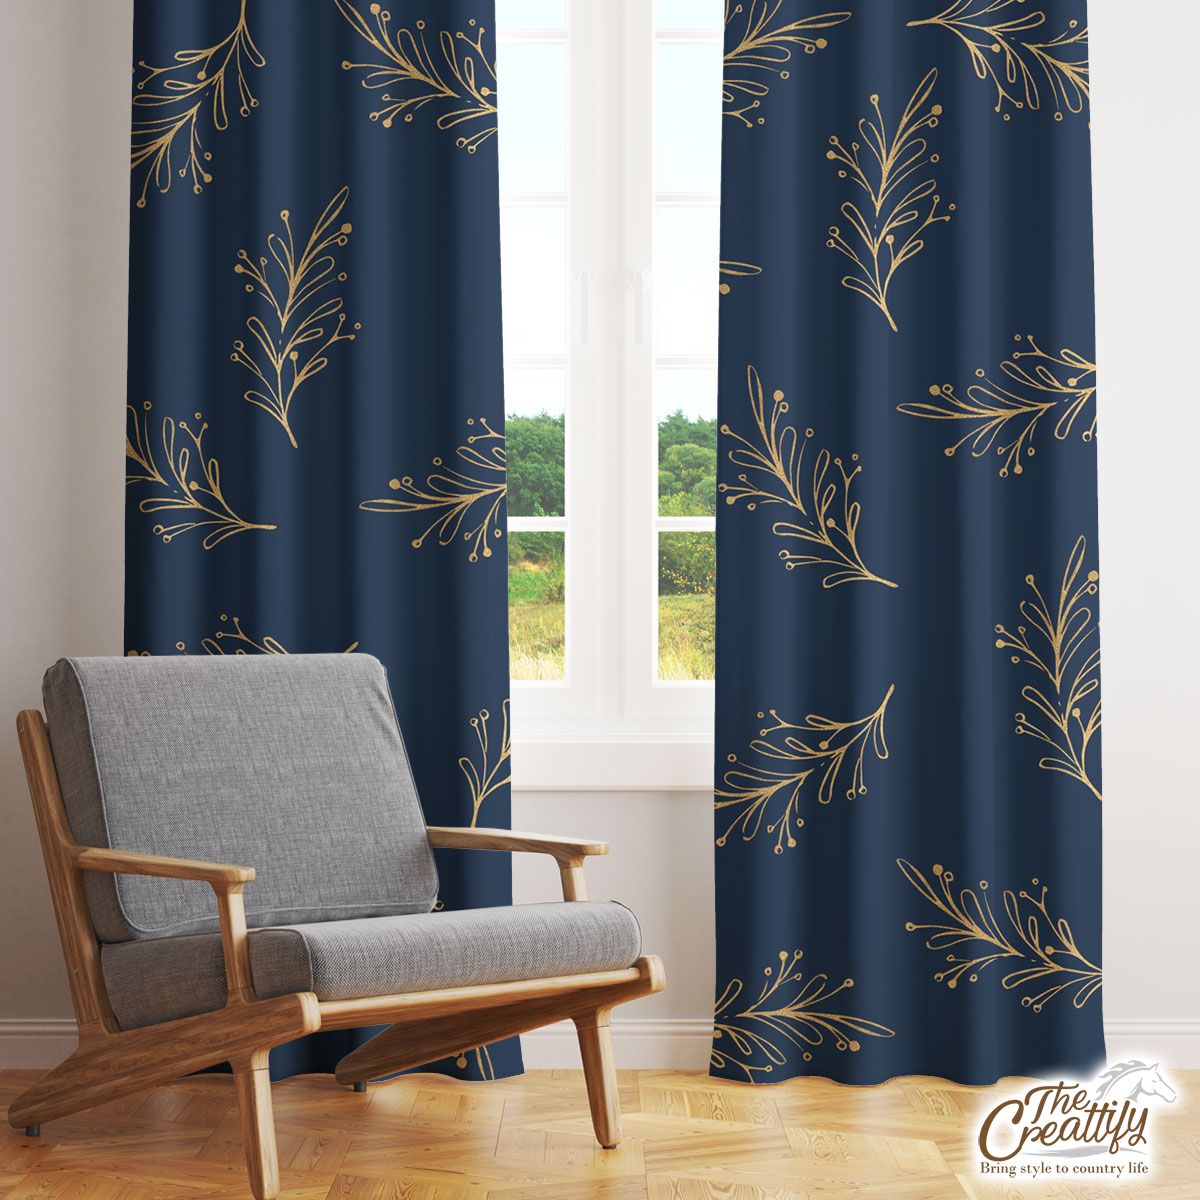 Long Leaf Pine Pattern Window Curtain